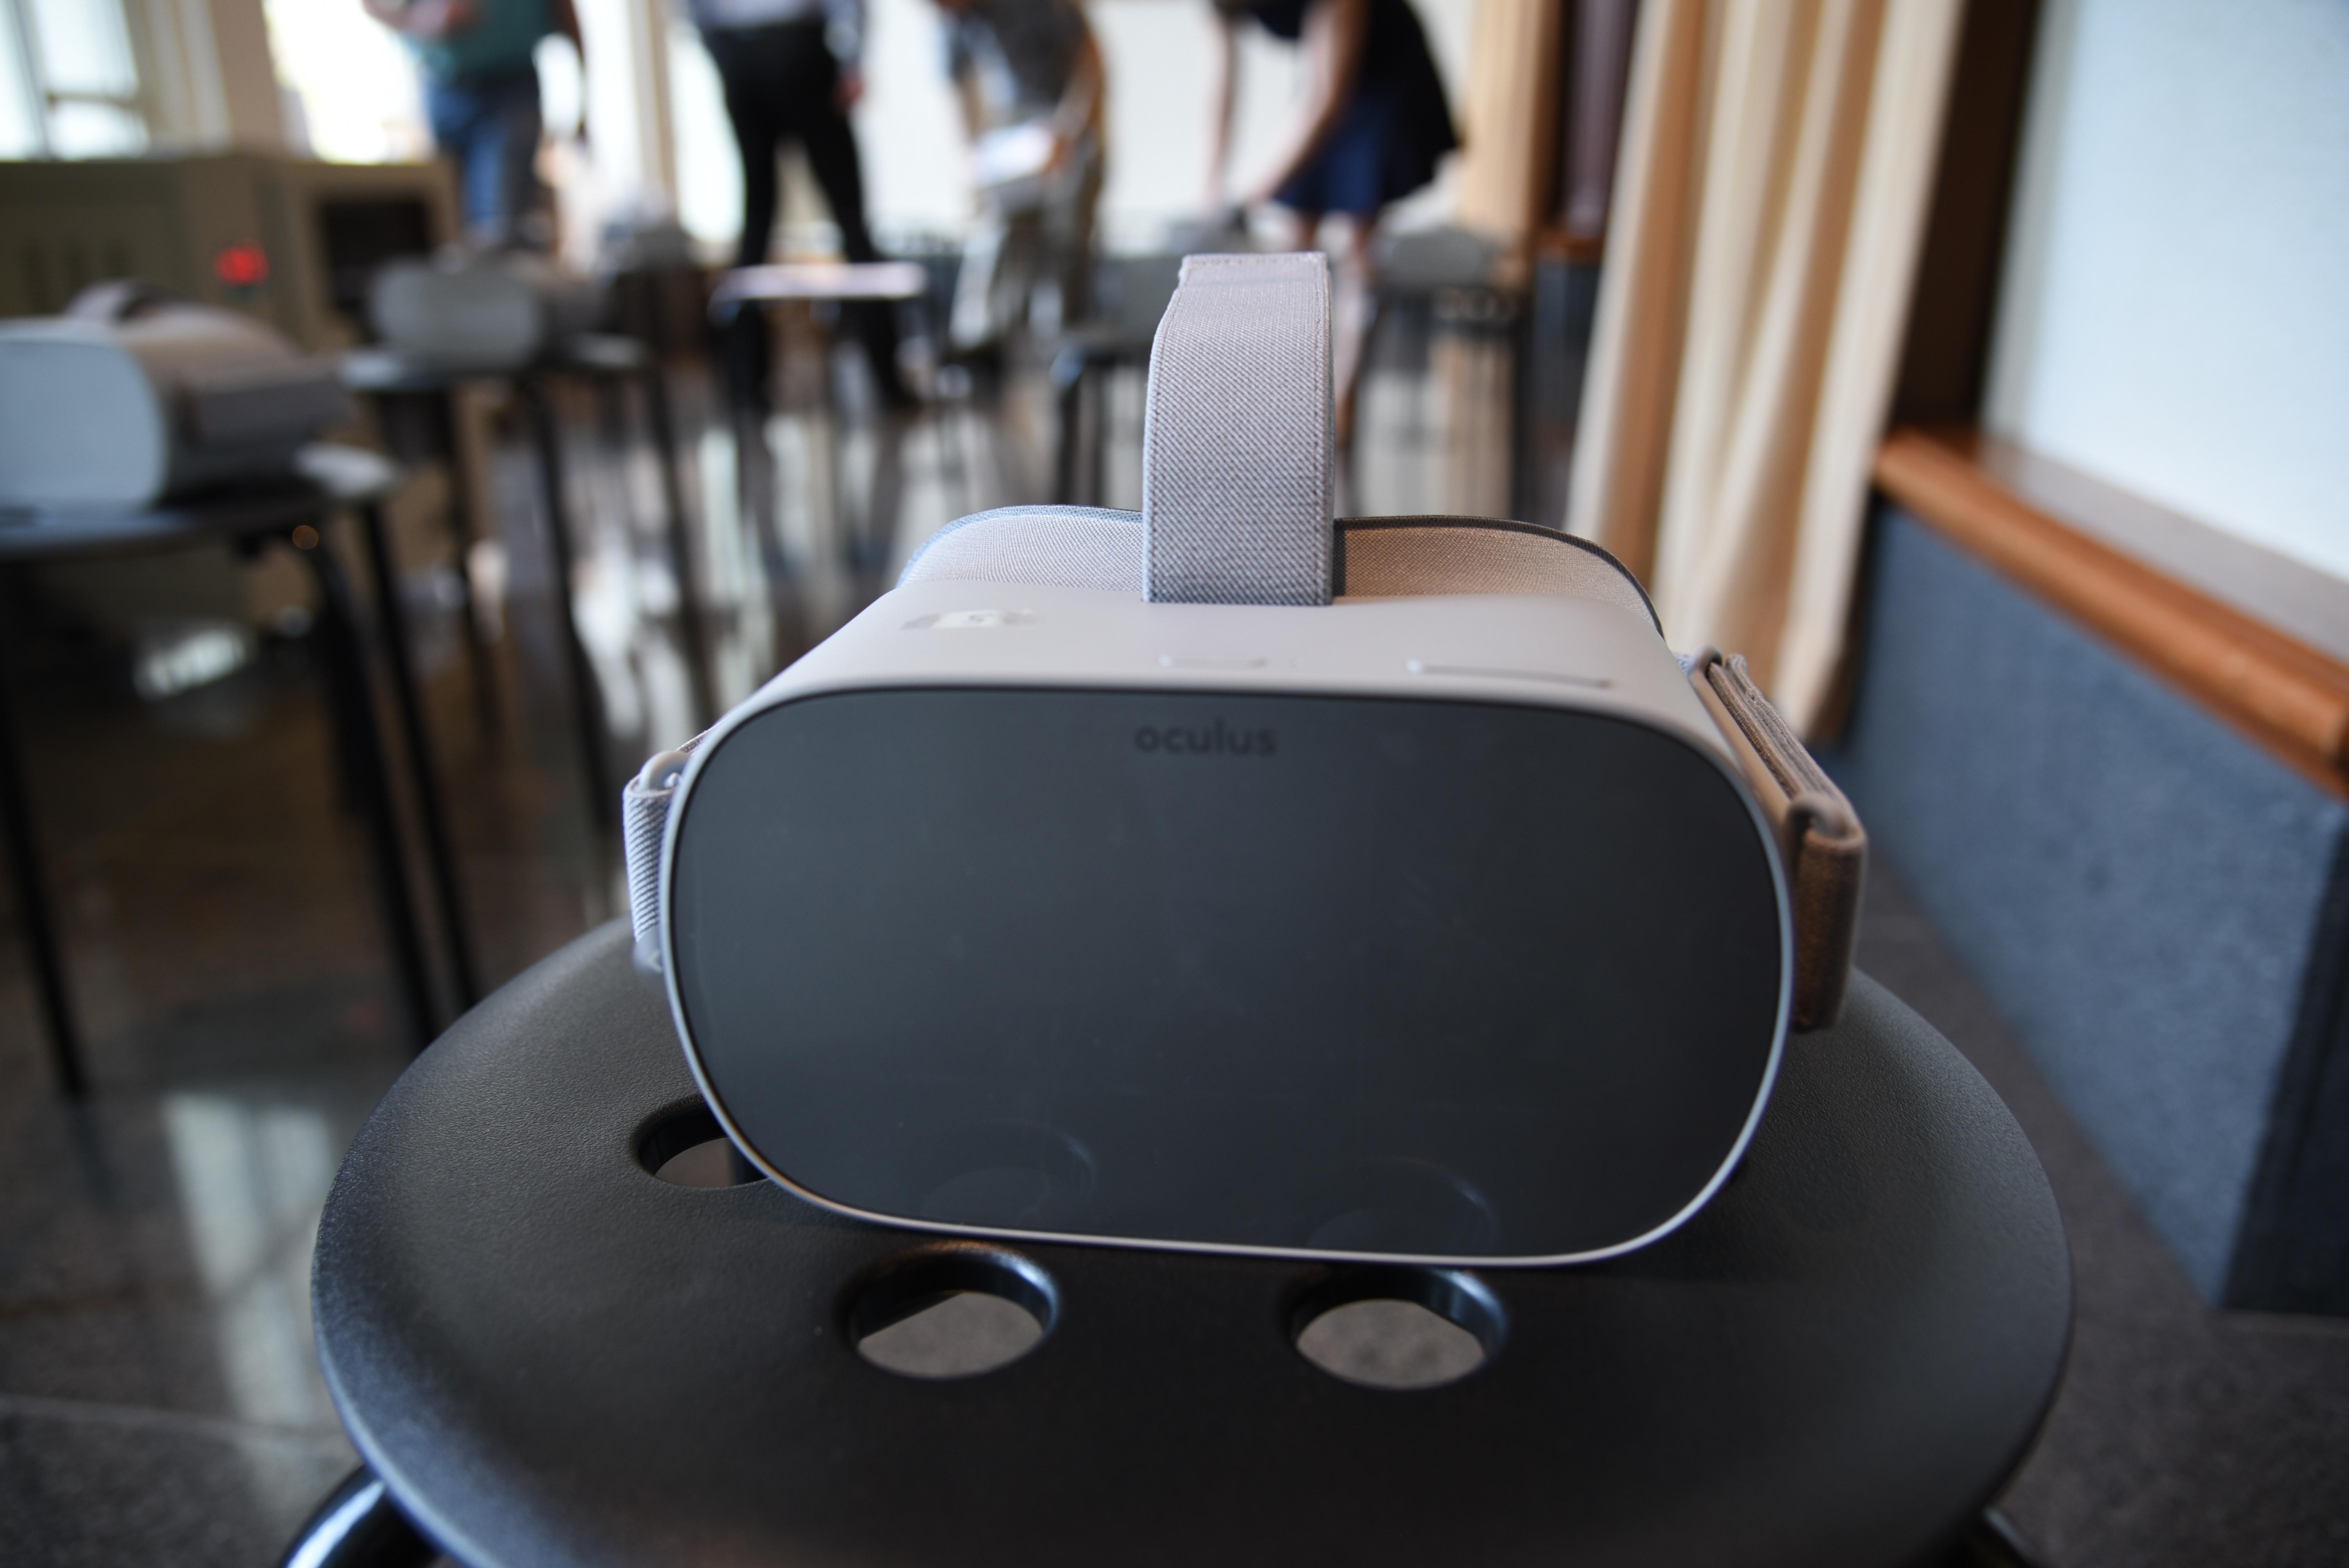 Oculus Go headset that stores the Eva Virtual Reality Tour.